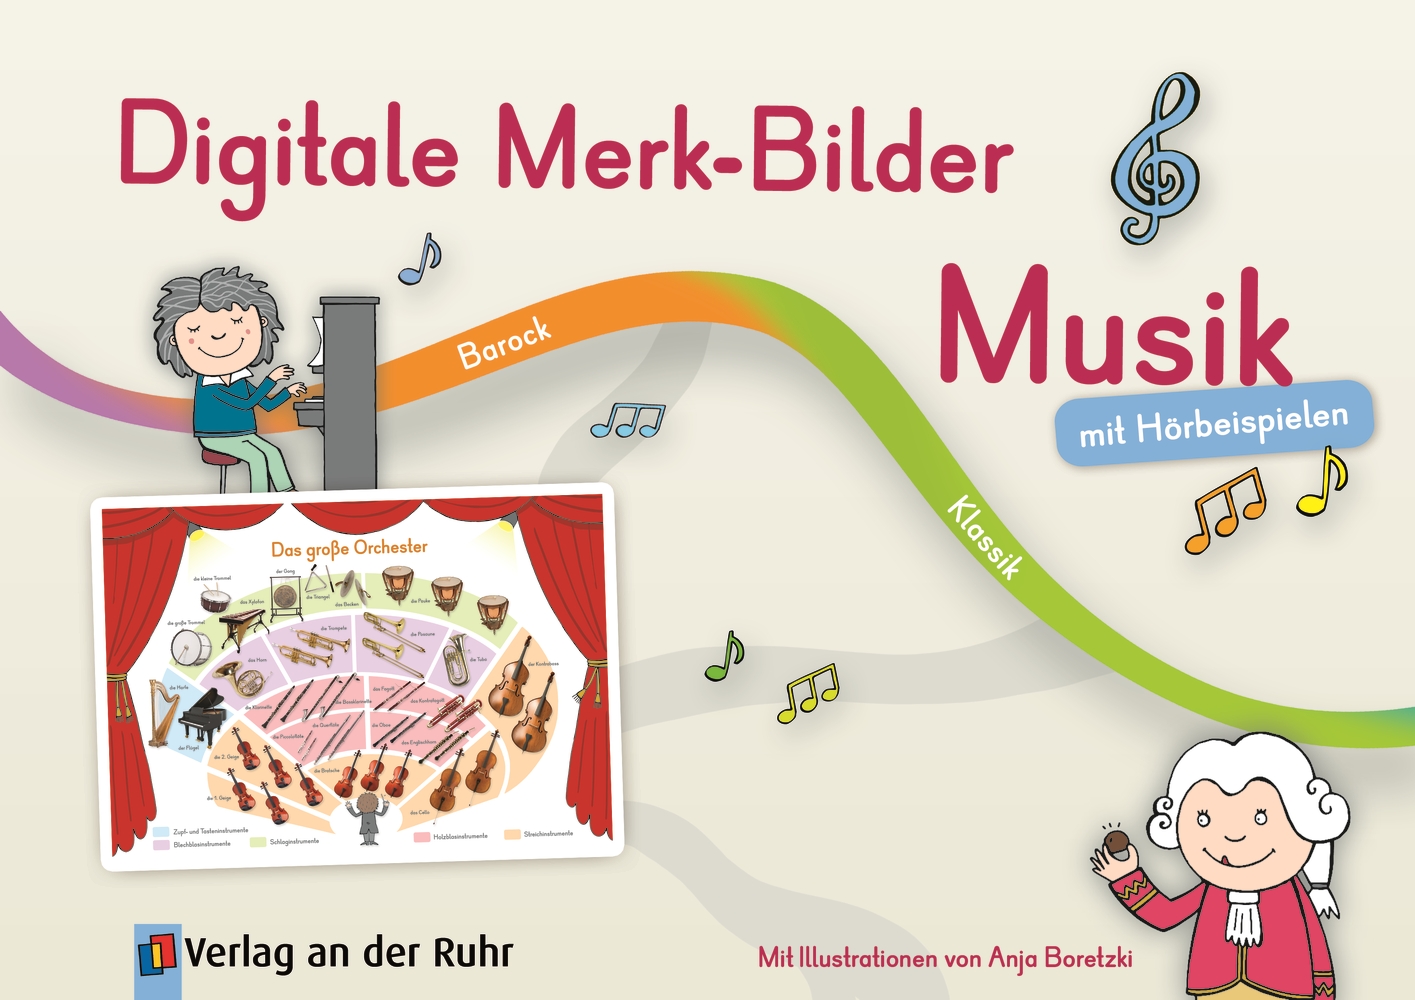 Digitale Merk-Bilder Musik - Premium-Lizenz - Windows